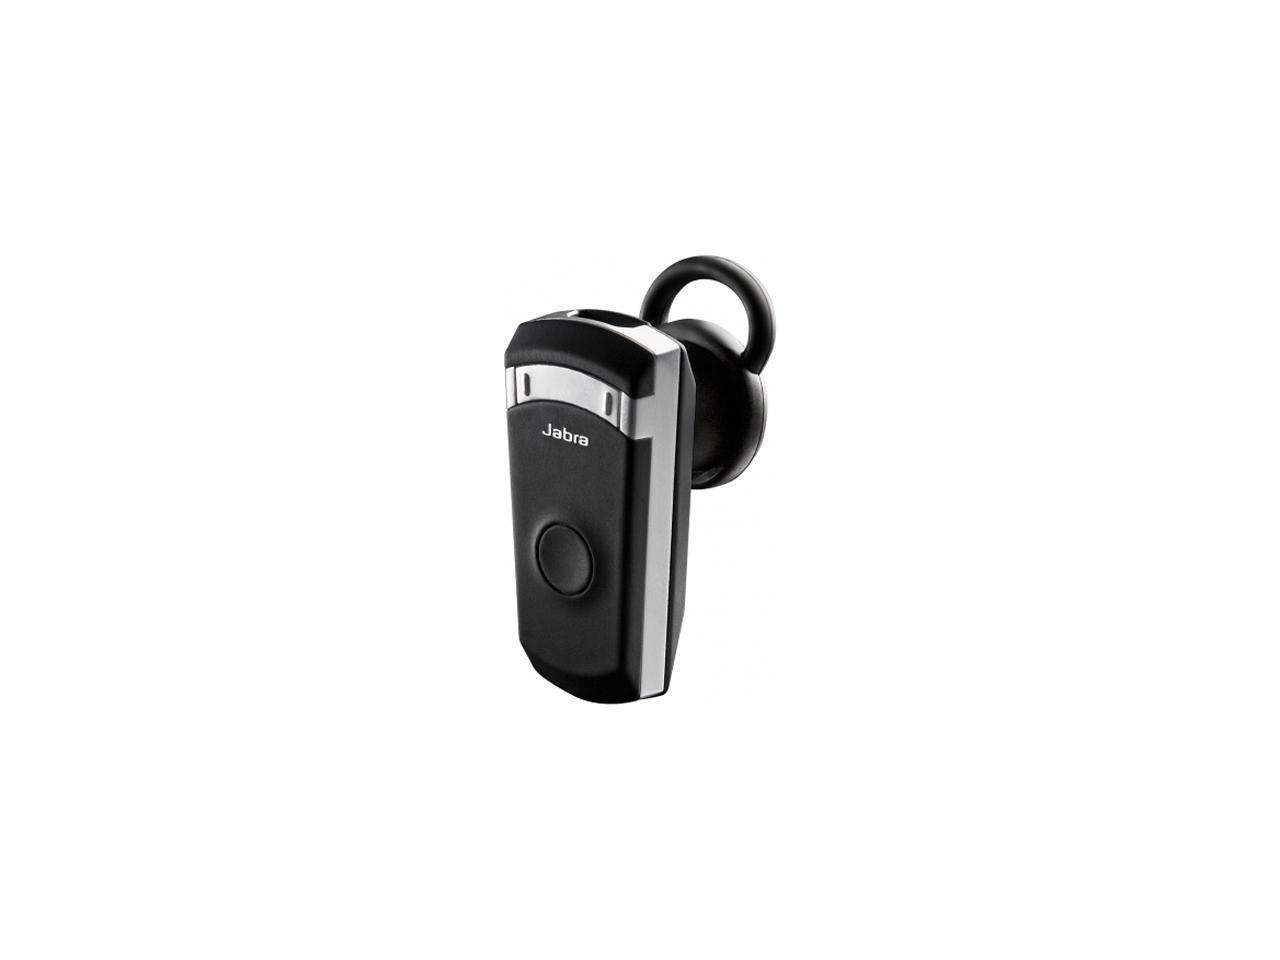 Verdraaiing Mens Om toestemming te geven Jabra BT8040 A2DP Bluetooth Headset w/ 6 hrs of talk time & DSP Technology  - Newegg.com